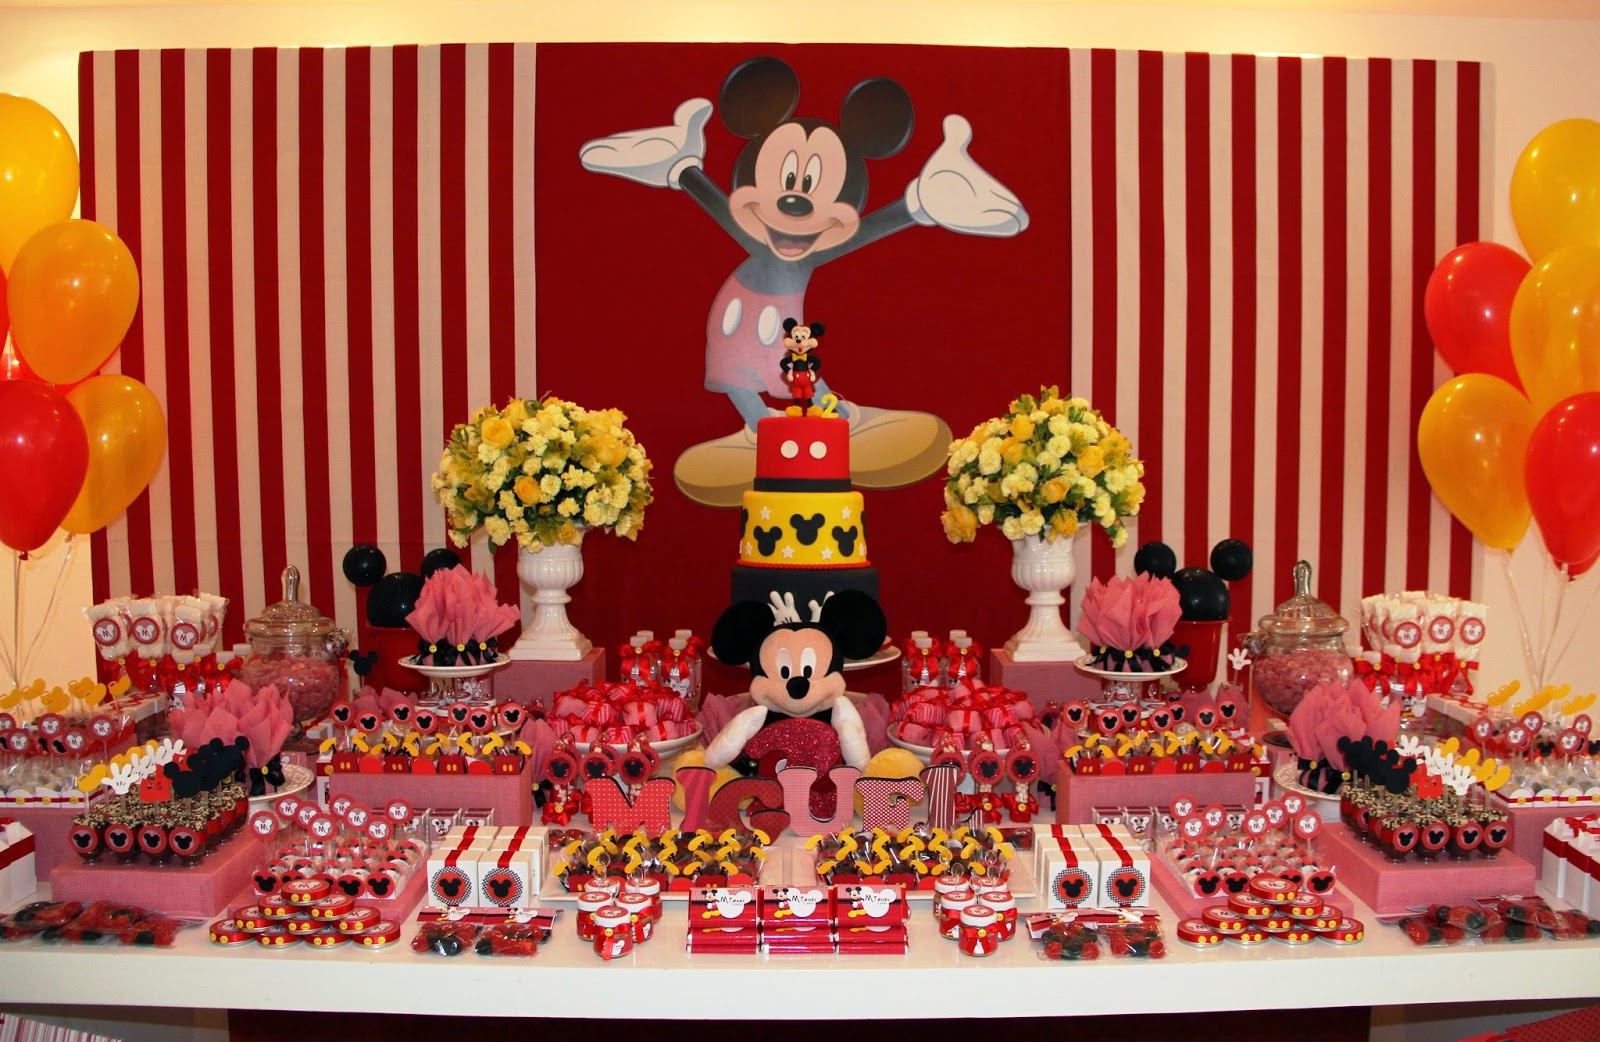 Festa De Aniversario Do Mickey - Festa do Mickey 50 Ideias de decoração!!! Construindo